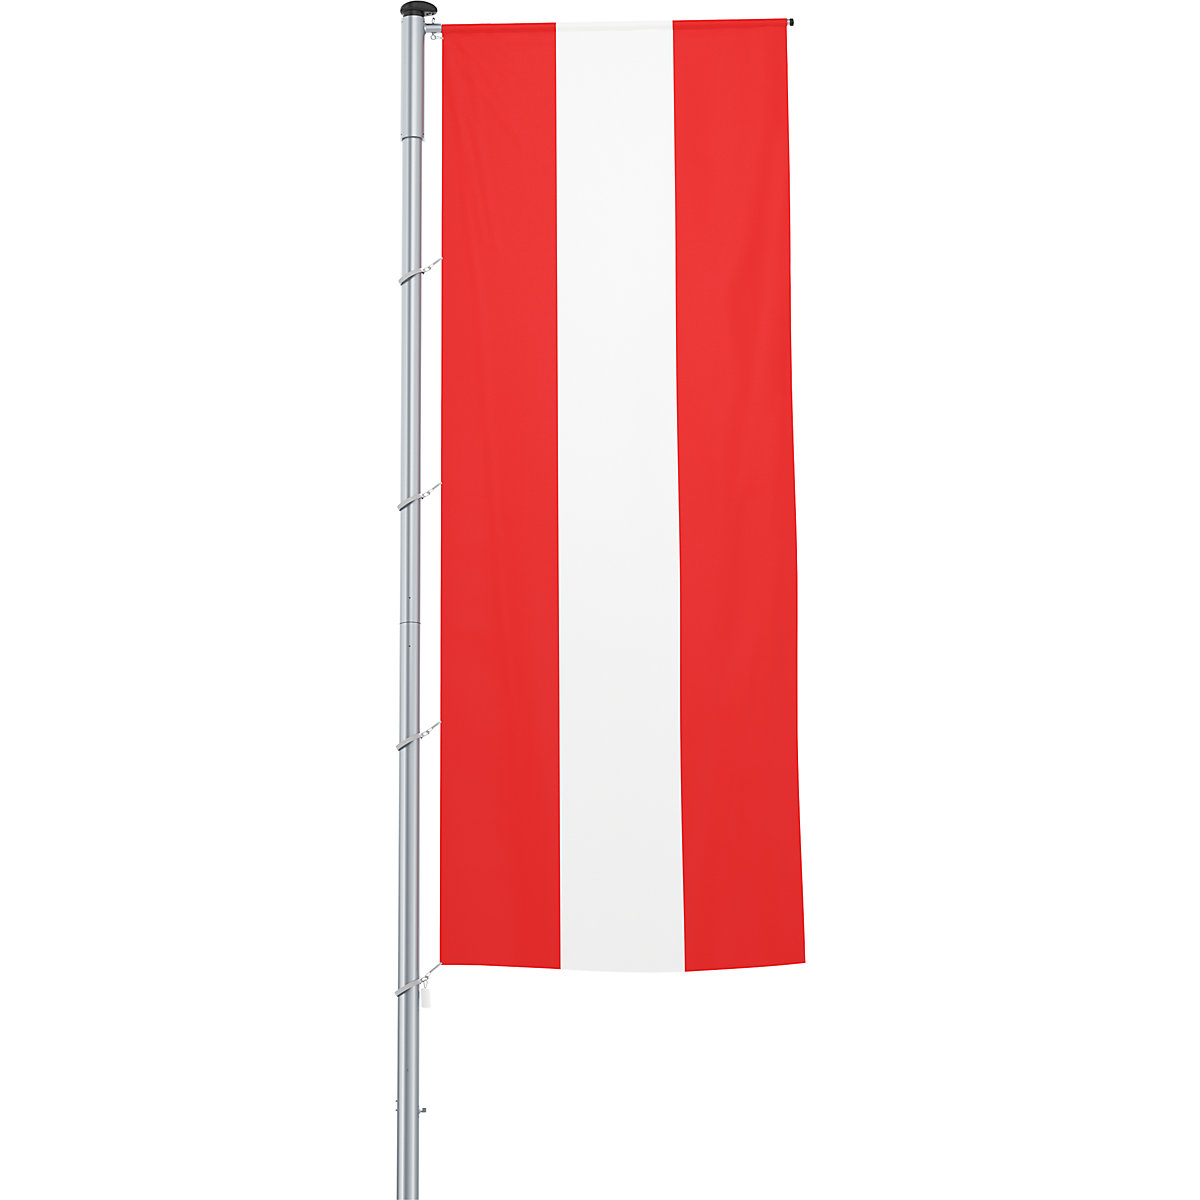 Mastvlag/landvlag – Mannus, formaat 1,2 x 3 m, Oostenrijk-27